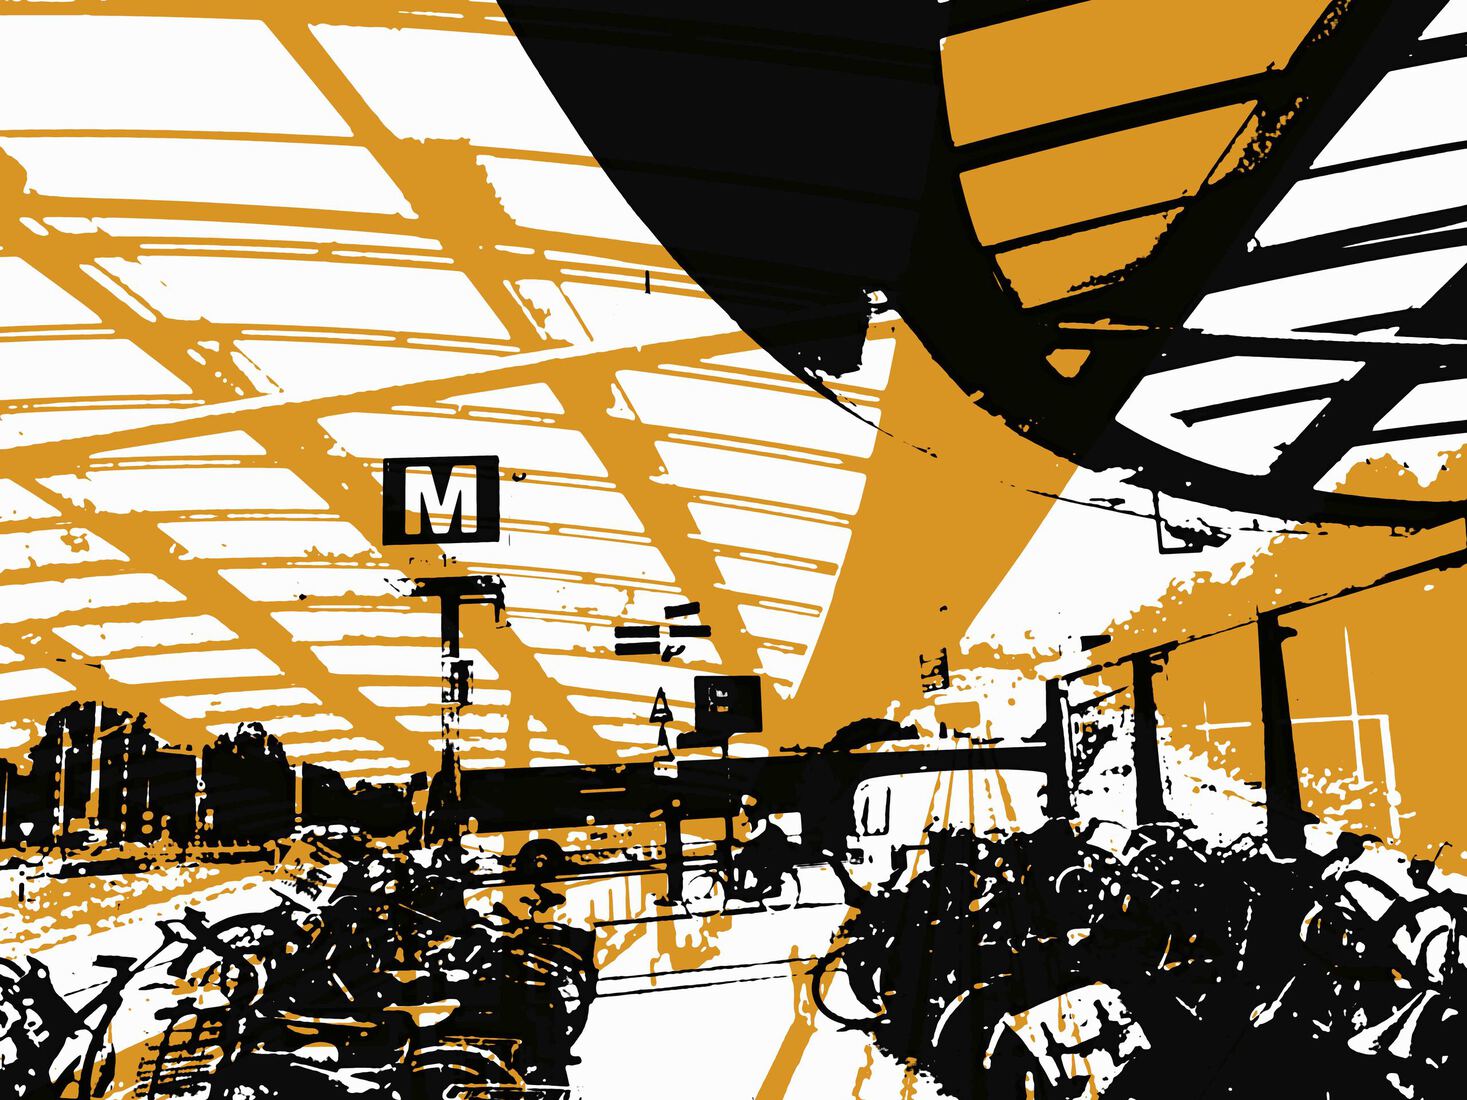 Metrostation Noorderpark Amsterdam-Noord 1,- digitale art print